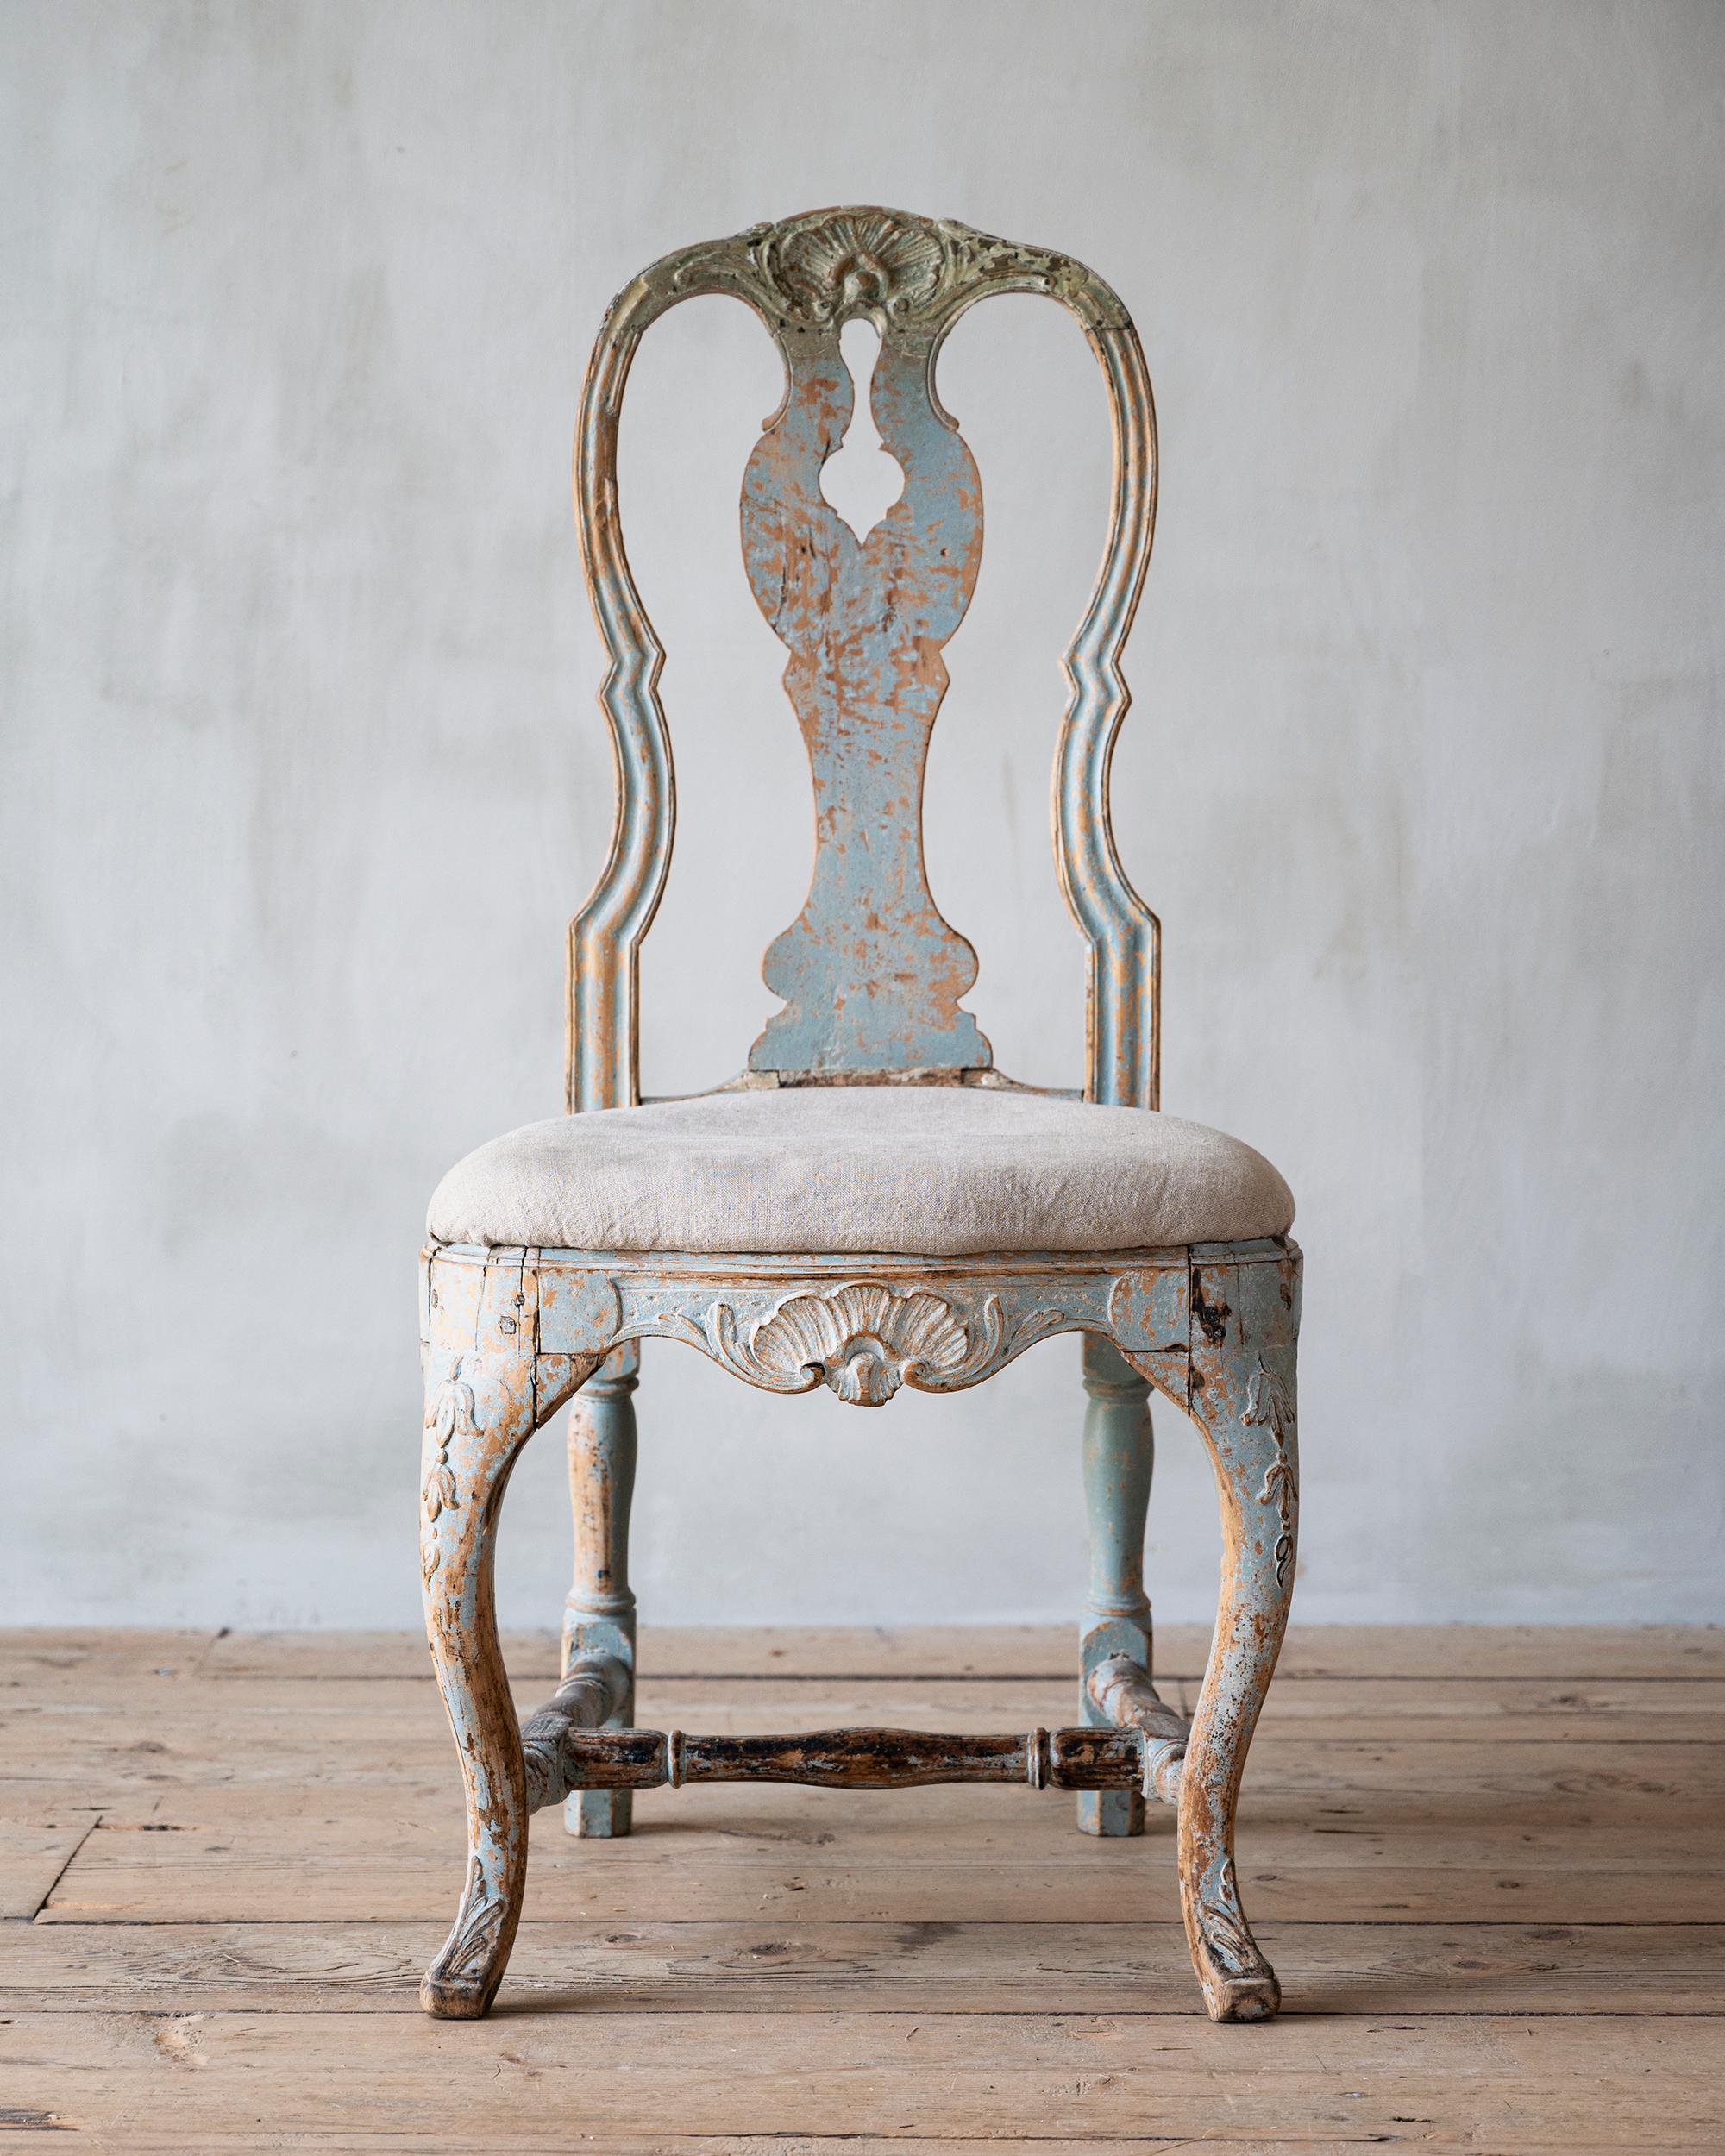 Exceptionnelle chaise rococo suédoise du XVIIIe siècle avec des sculptures en relief, surface d'origine et très belle forme. ca 1770 Suède. 